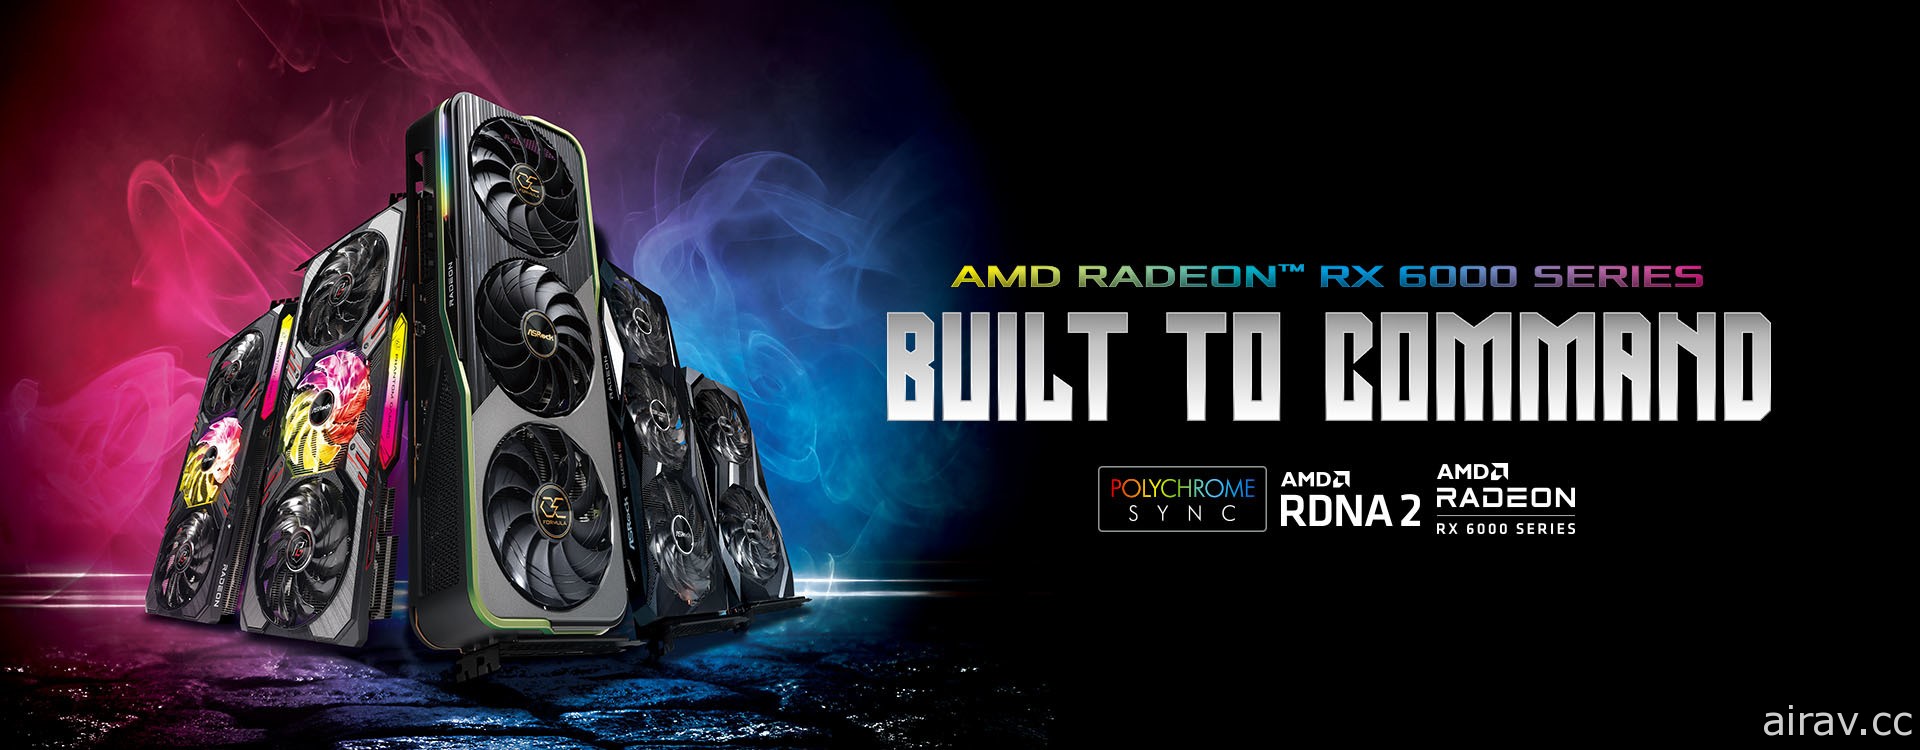 華擎發表 AMD Radeon RX 6950 XT 等系列新顯示卡